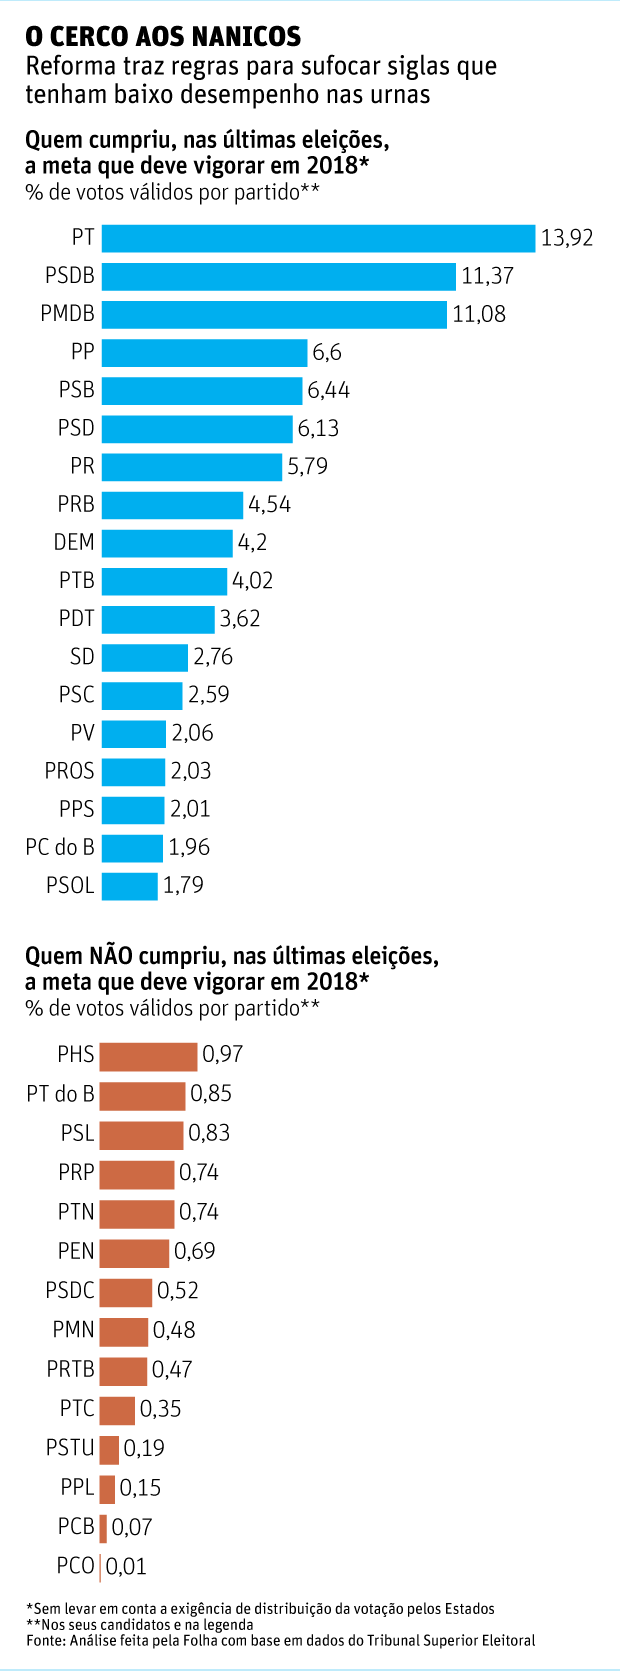 O CERCO AOS NANICOS Reforma traz regras para sufocar siglas que tenham baixo desempenho nas urnas 